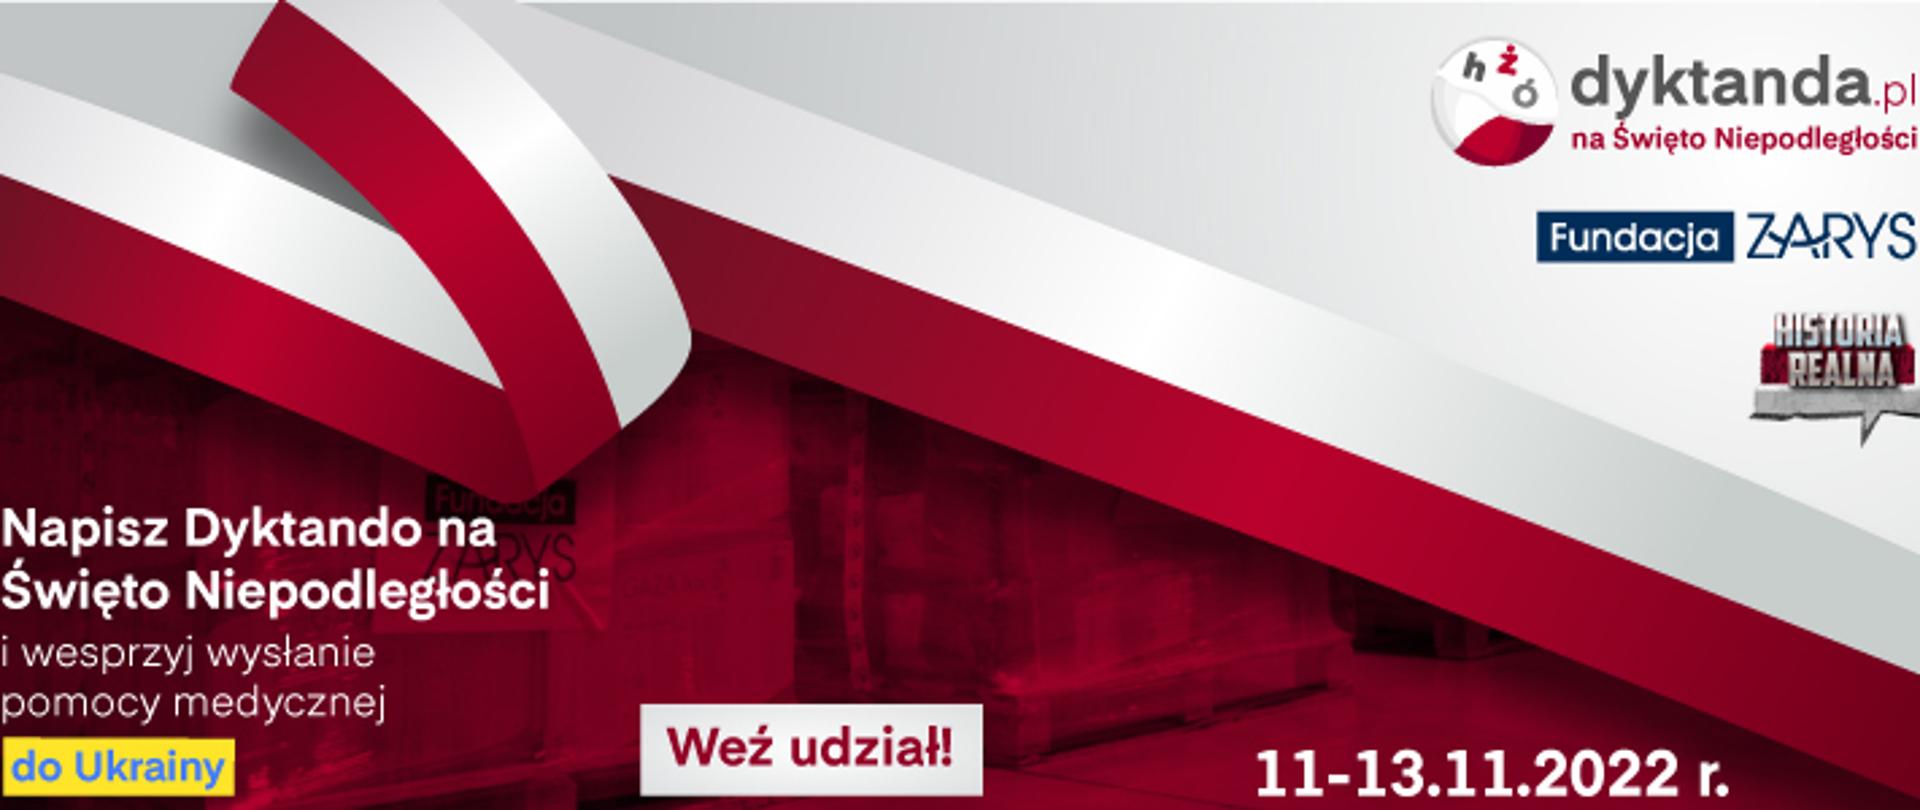 Plakat informujący o przeprowadzeniu narodowego dyktanda z okazji Święta Niepodległości przeprowadzany w dniach 11- 13.11.2022 roku. 